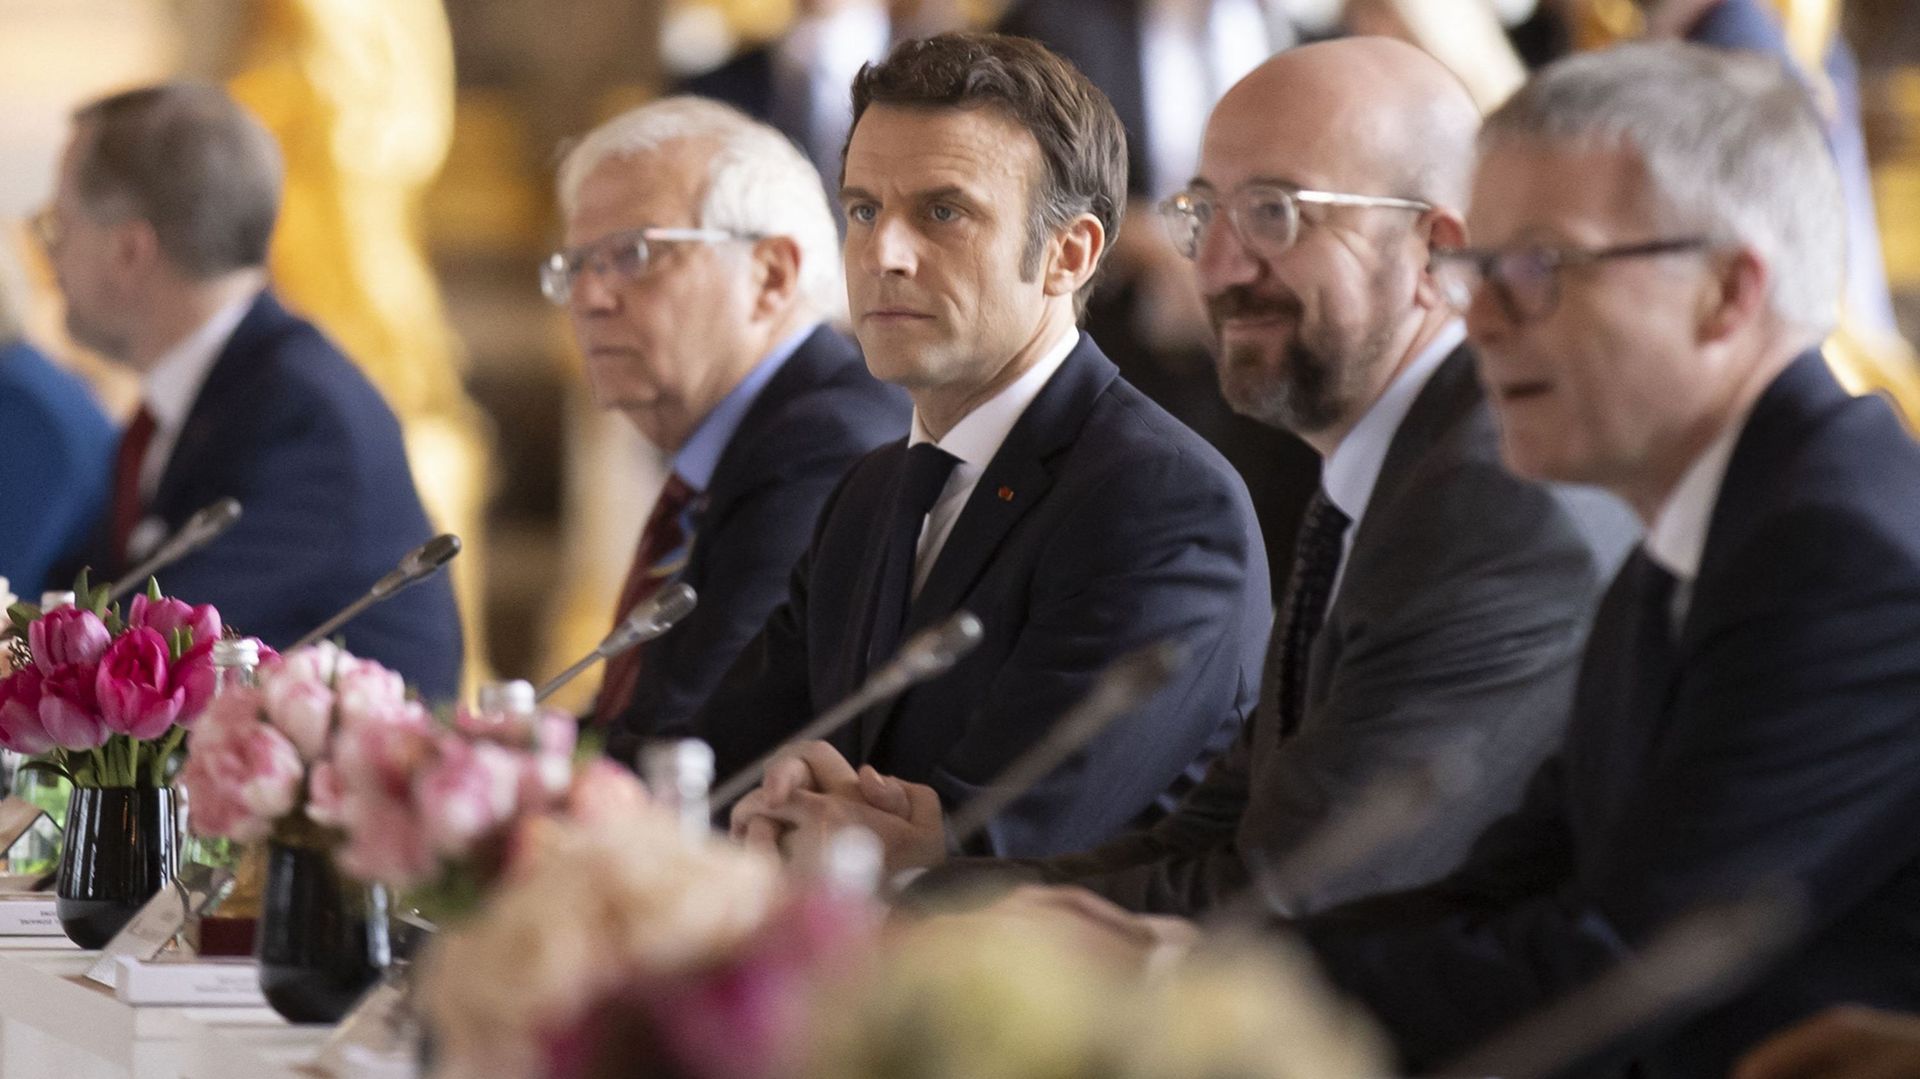 Sommet européen à Versailles en France : Emmanuel Macron, Charles Michel et Josep Borell